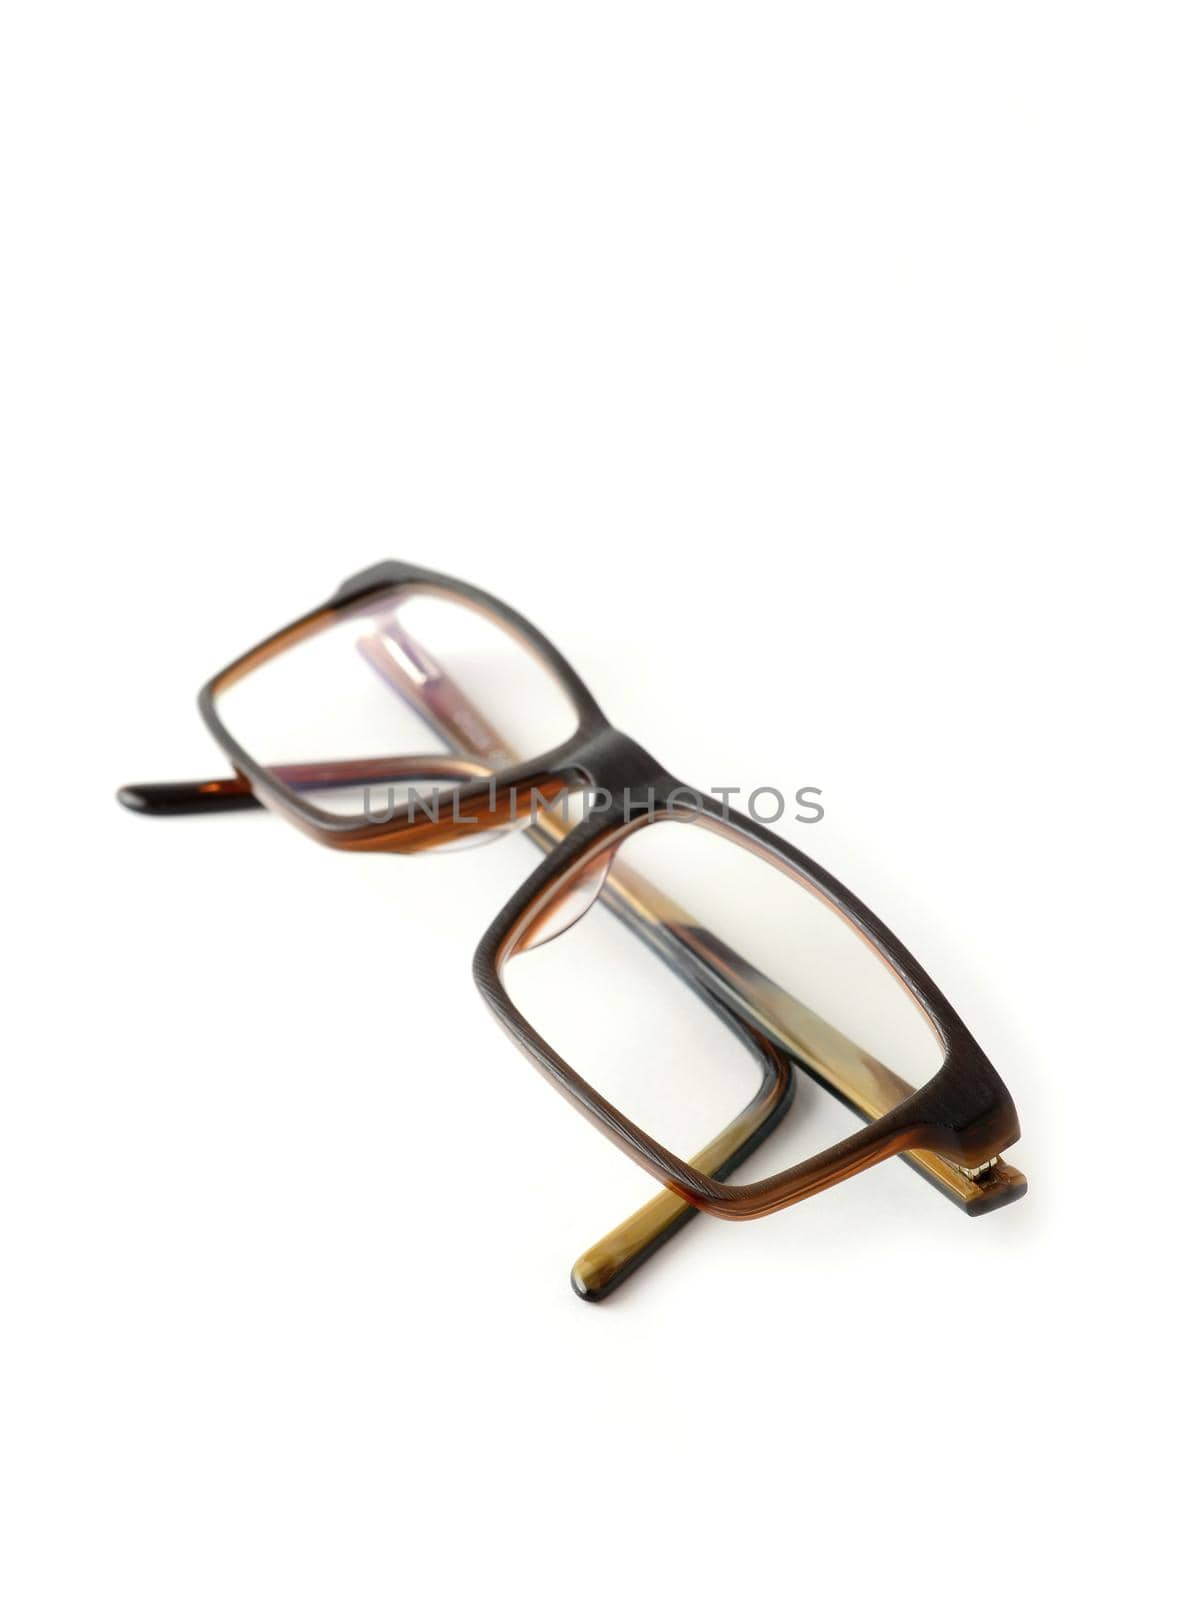 Folded eyeglasses on white background by hamik